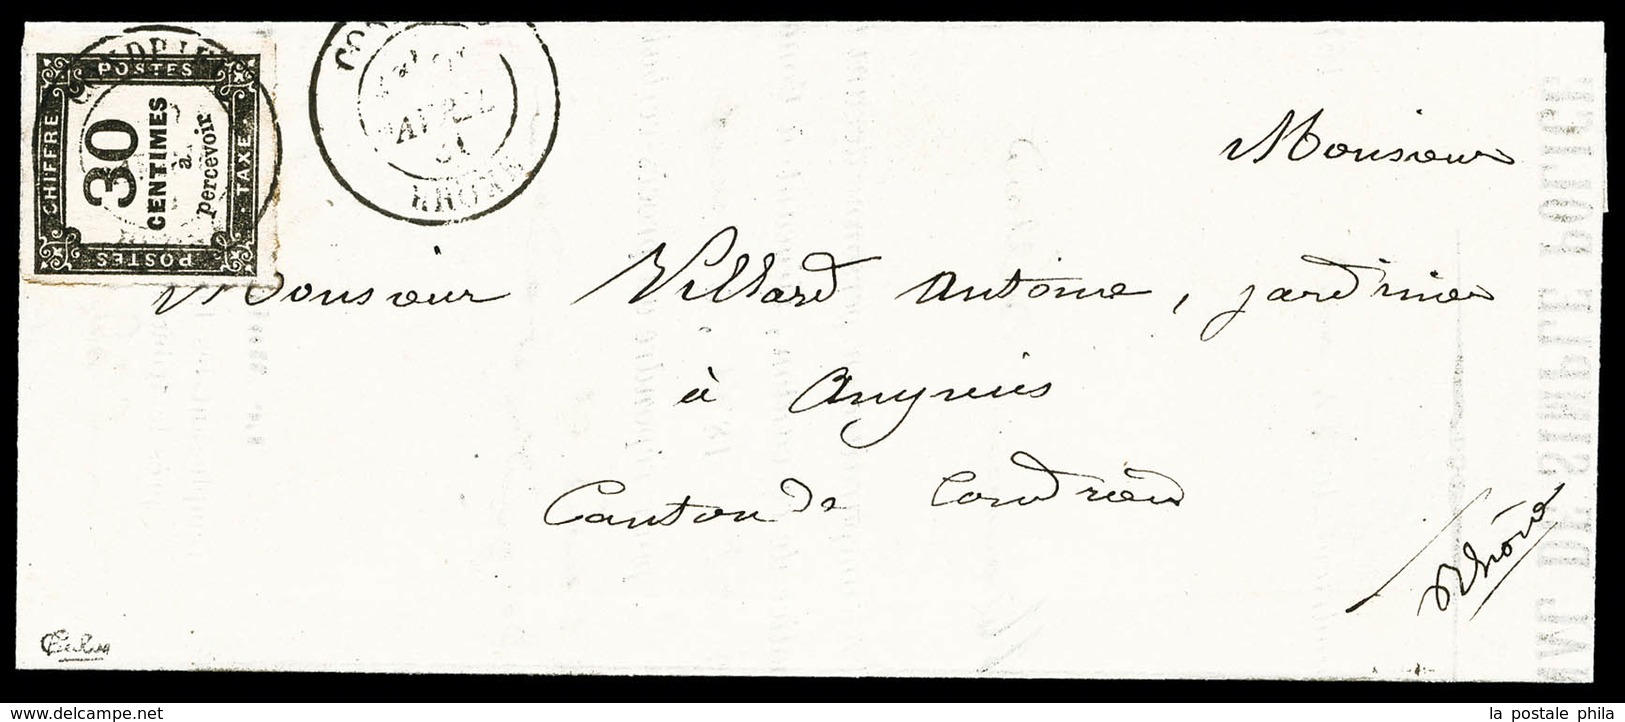 O N°6, 30c Noir Sur Lettre Du 24 Avril 1881 De Condrieu (Rhone), TTB (signé Calves)  Qualité: O  Cote: 300 Euros - 1849-1876: Classic Period